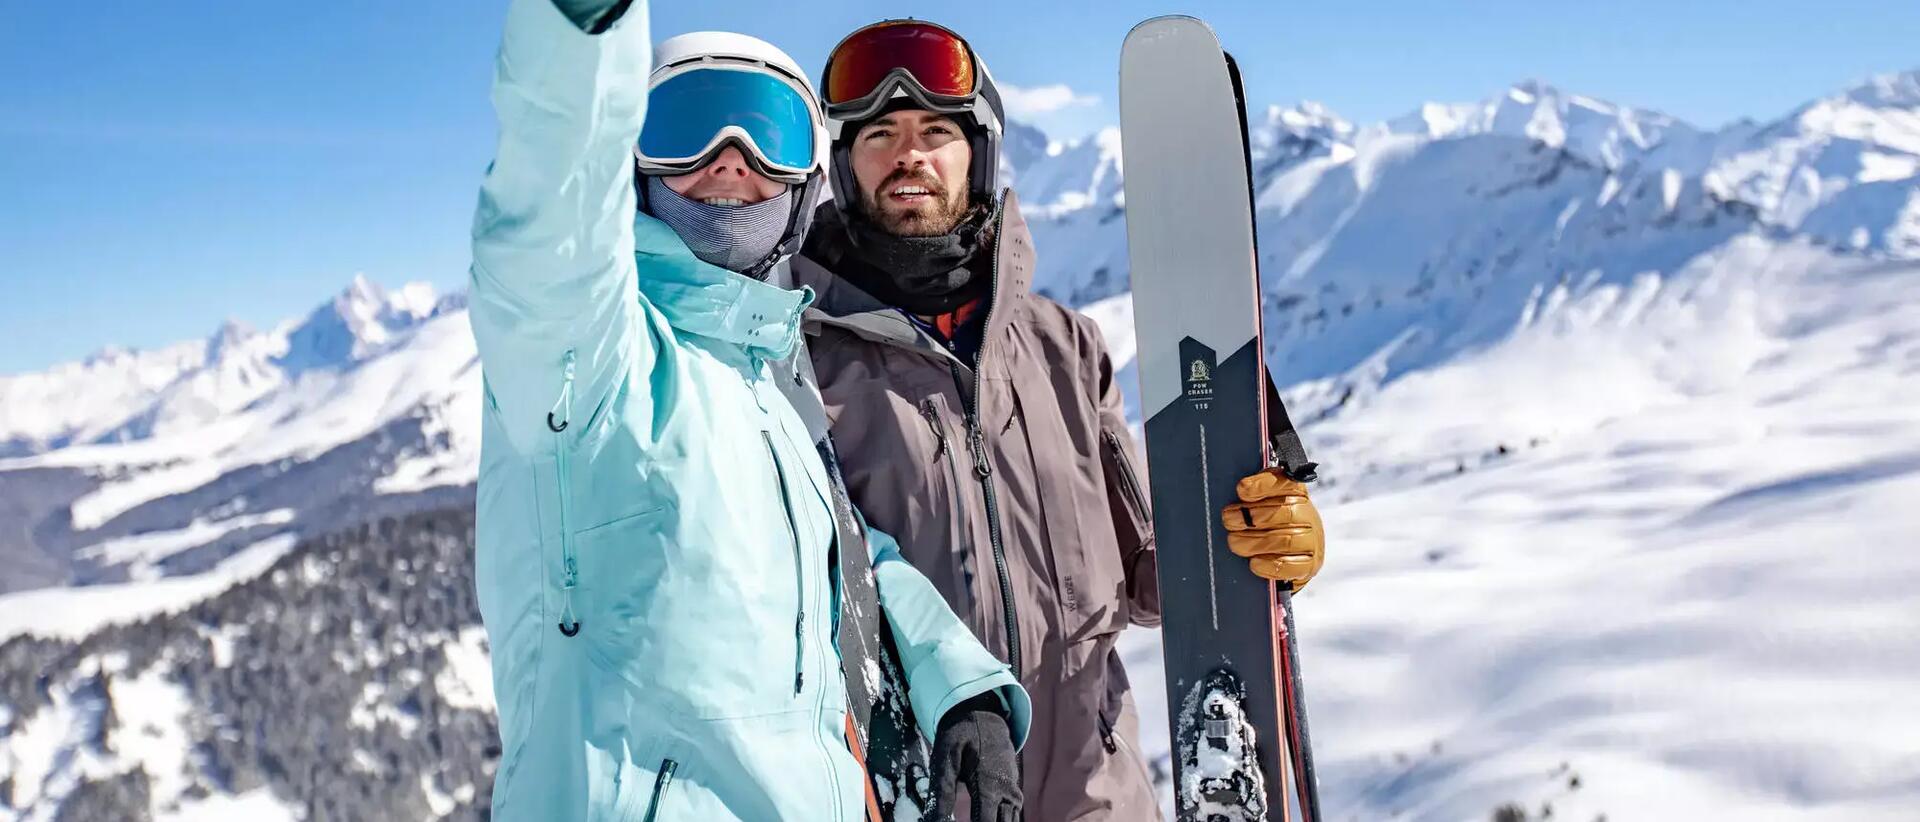 kobieta i mężczyzna w strojach narciarskich robią zdjęcie w górach